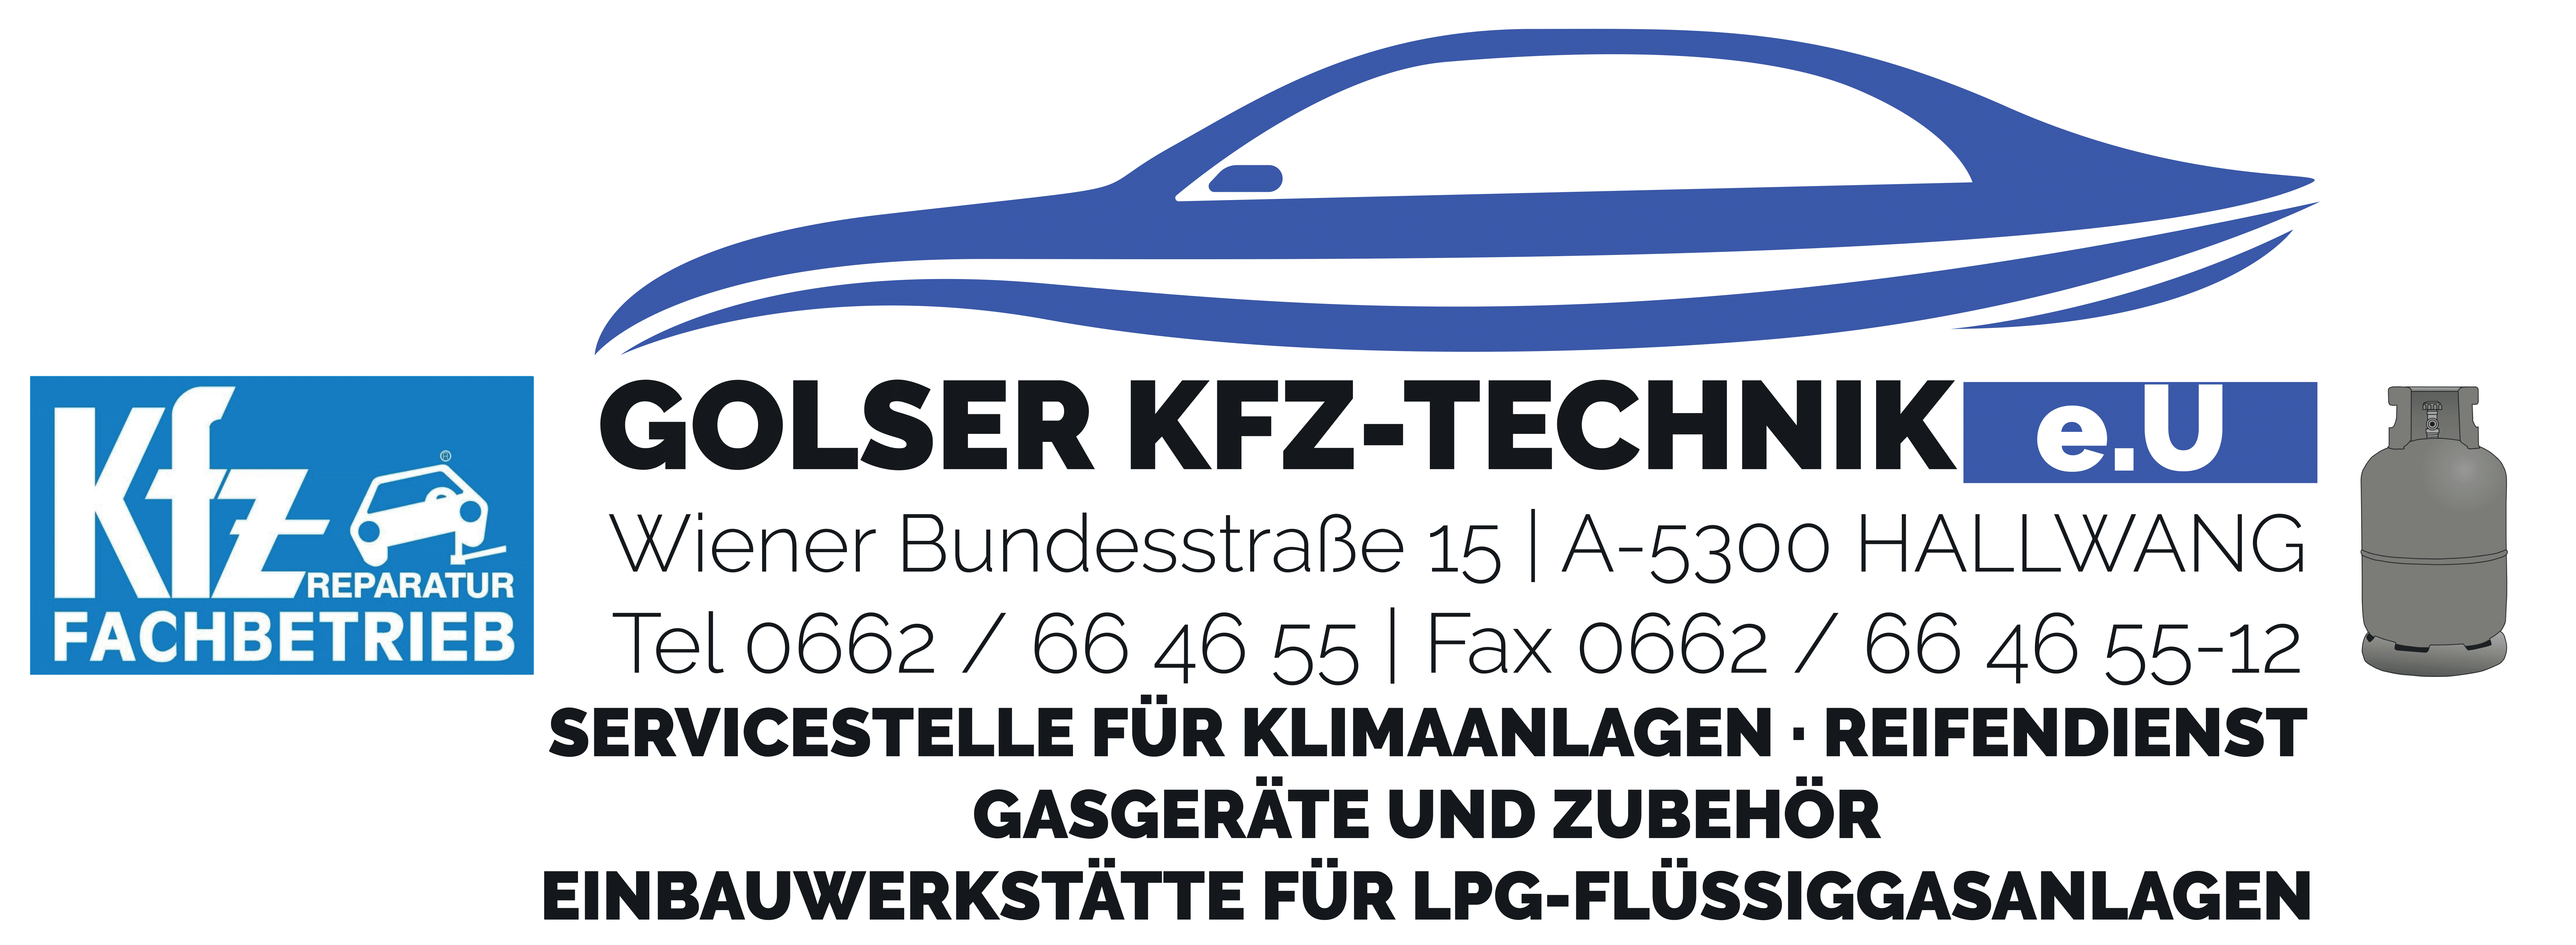 Bilder Golser KFZ-Technik e.U.